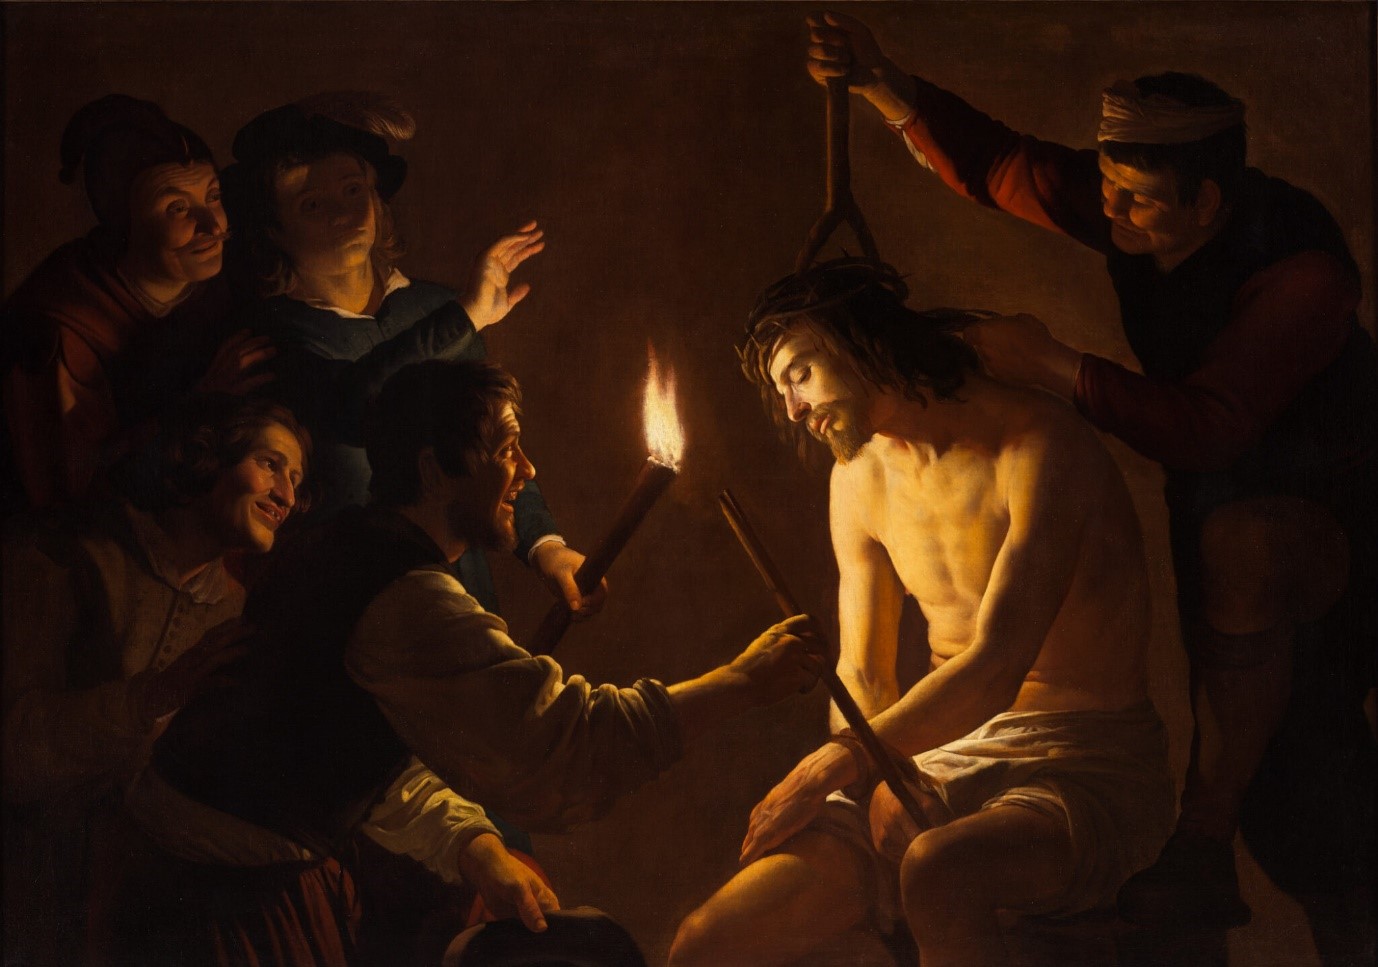 Chúa Giêsu bị chế nhạo – Kỳ cuối: Phạm thượng và cái chết